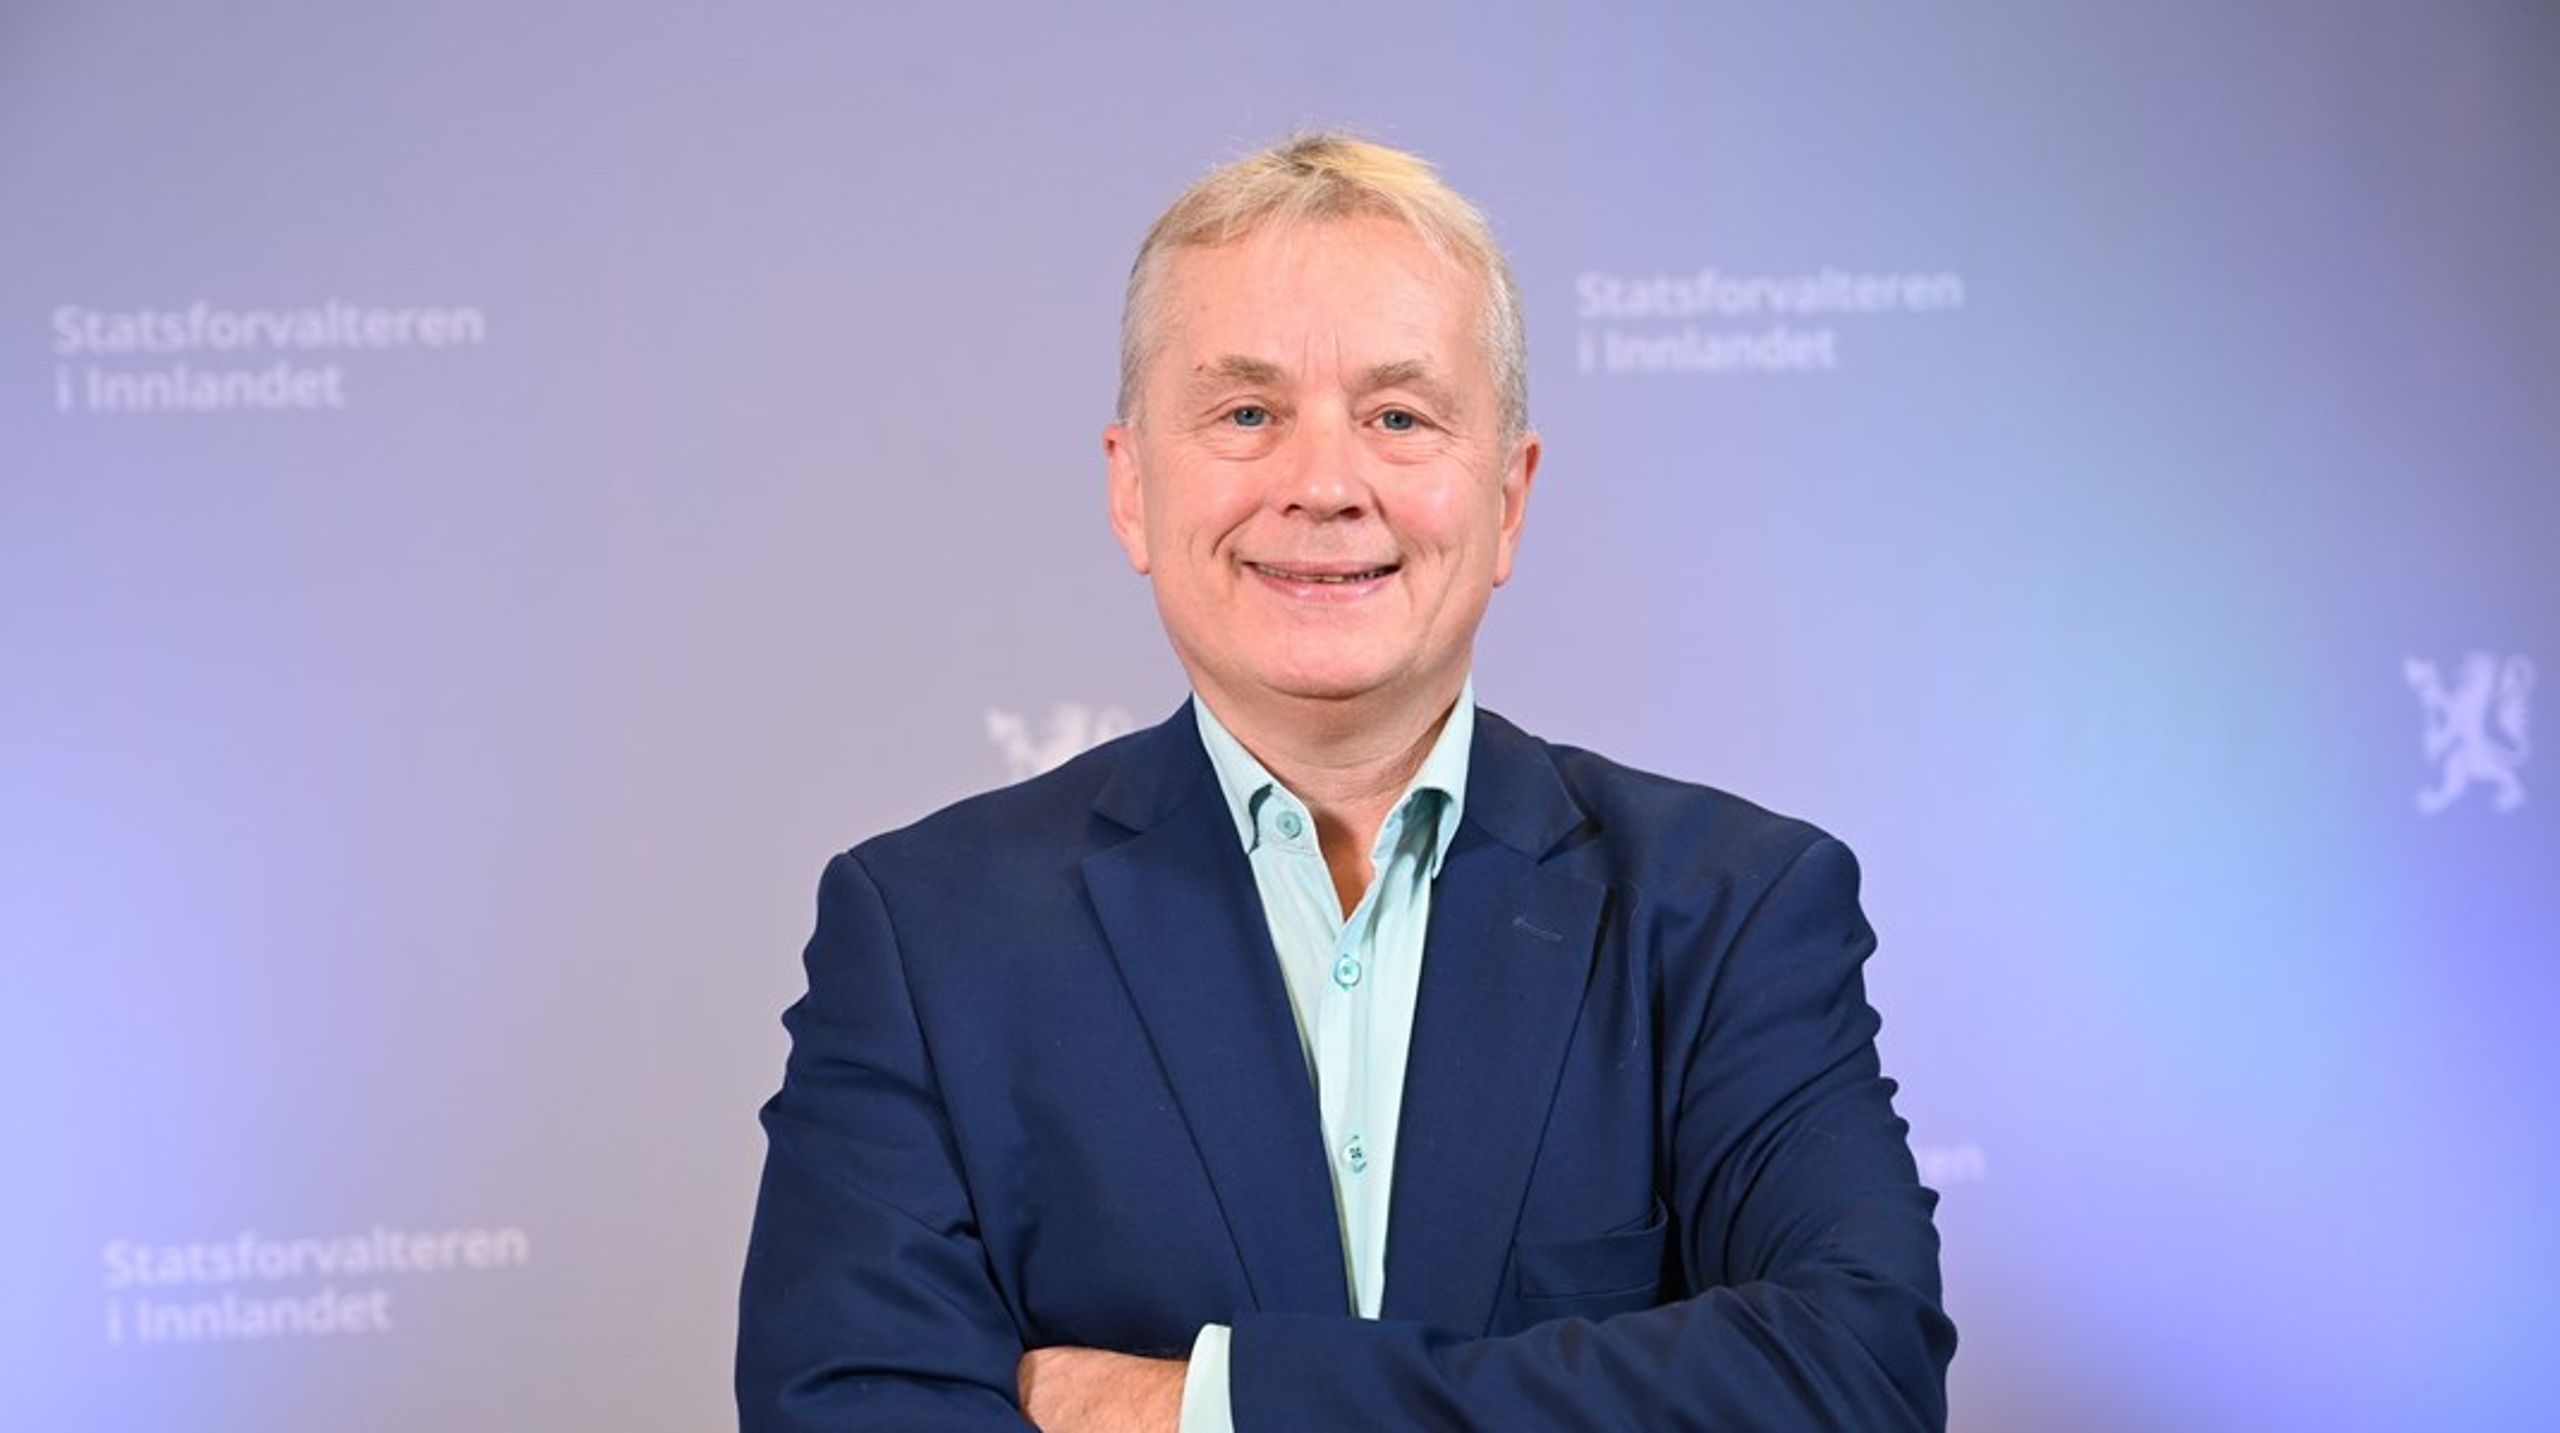 Statsforvalteren i Innlandet, Knut Storberget, er valgt til ny nestleder i styret til Statskog SF.